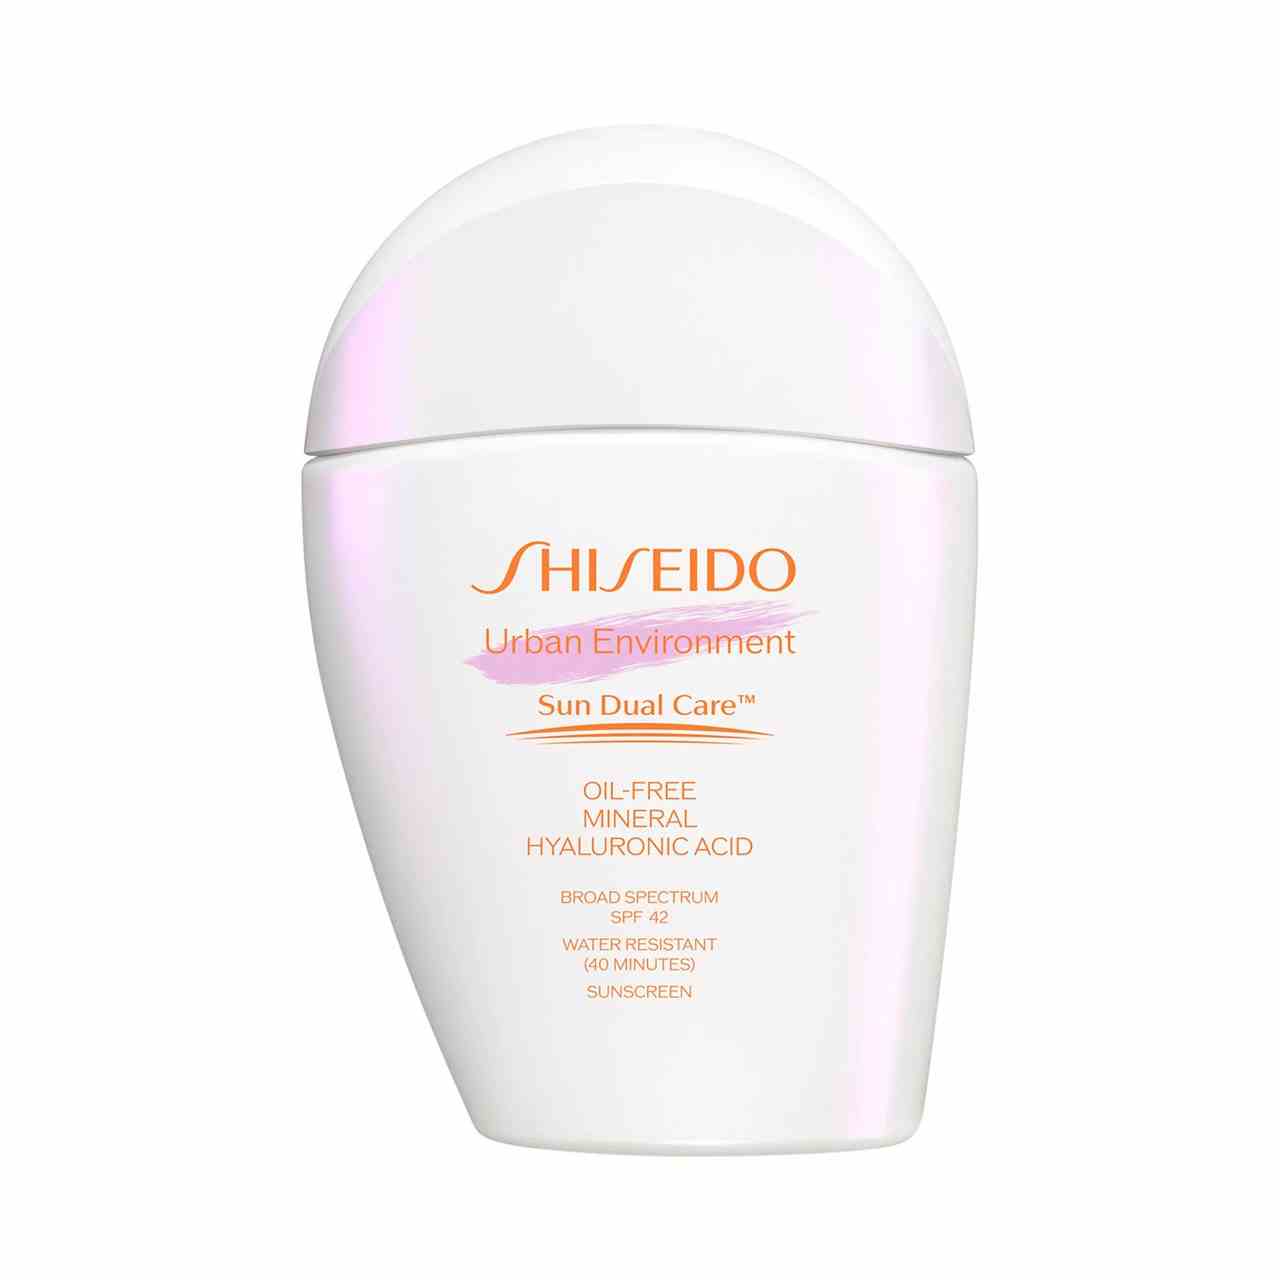 Shiseido Urban Environment Oil-Free Mineral Sunscreen SPF 42 weiße asymmetrische Flasche Sonnenschutz mit orangefarbenem Text auf weißem Hintergrund